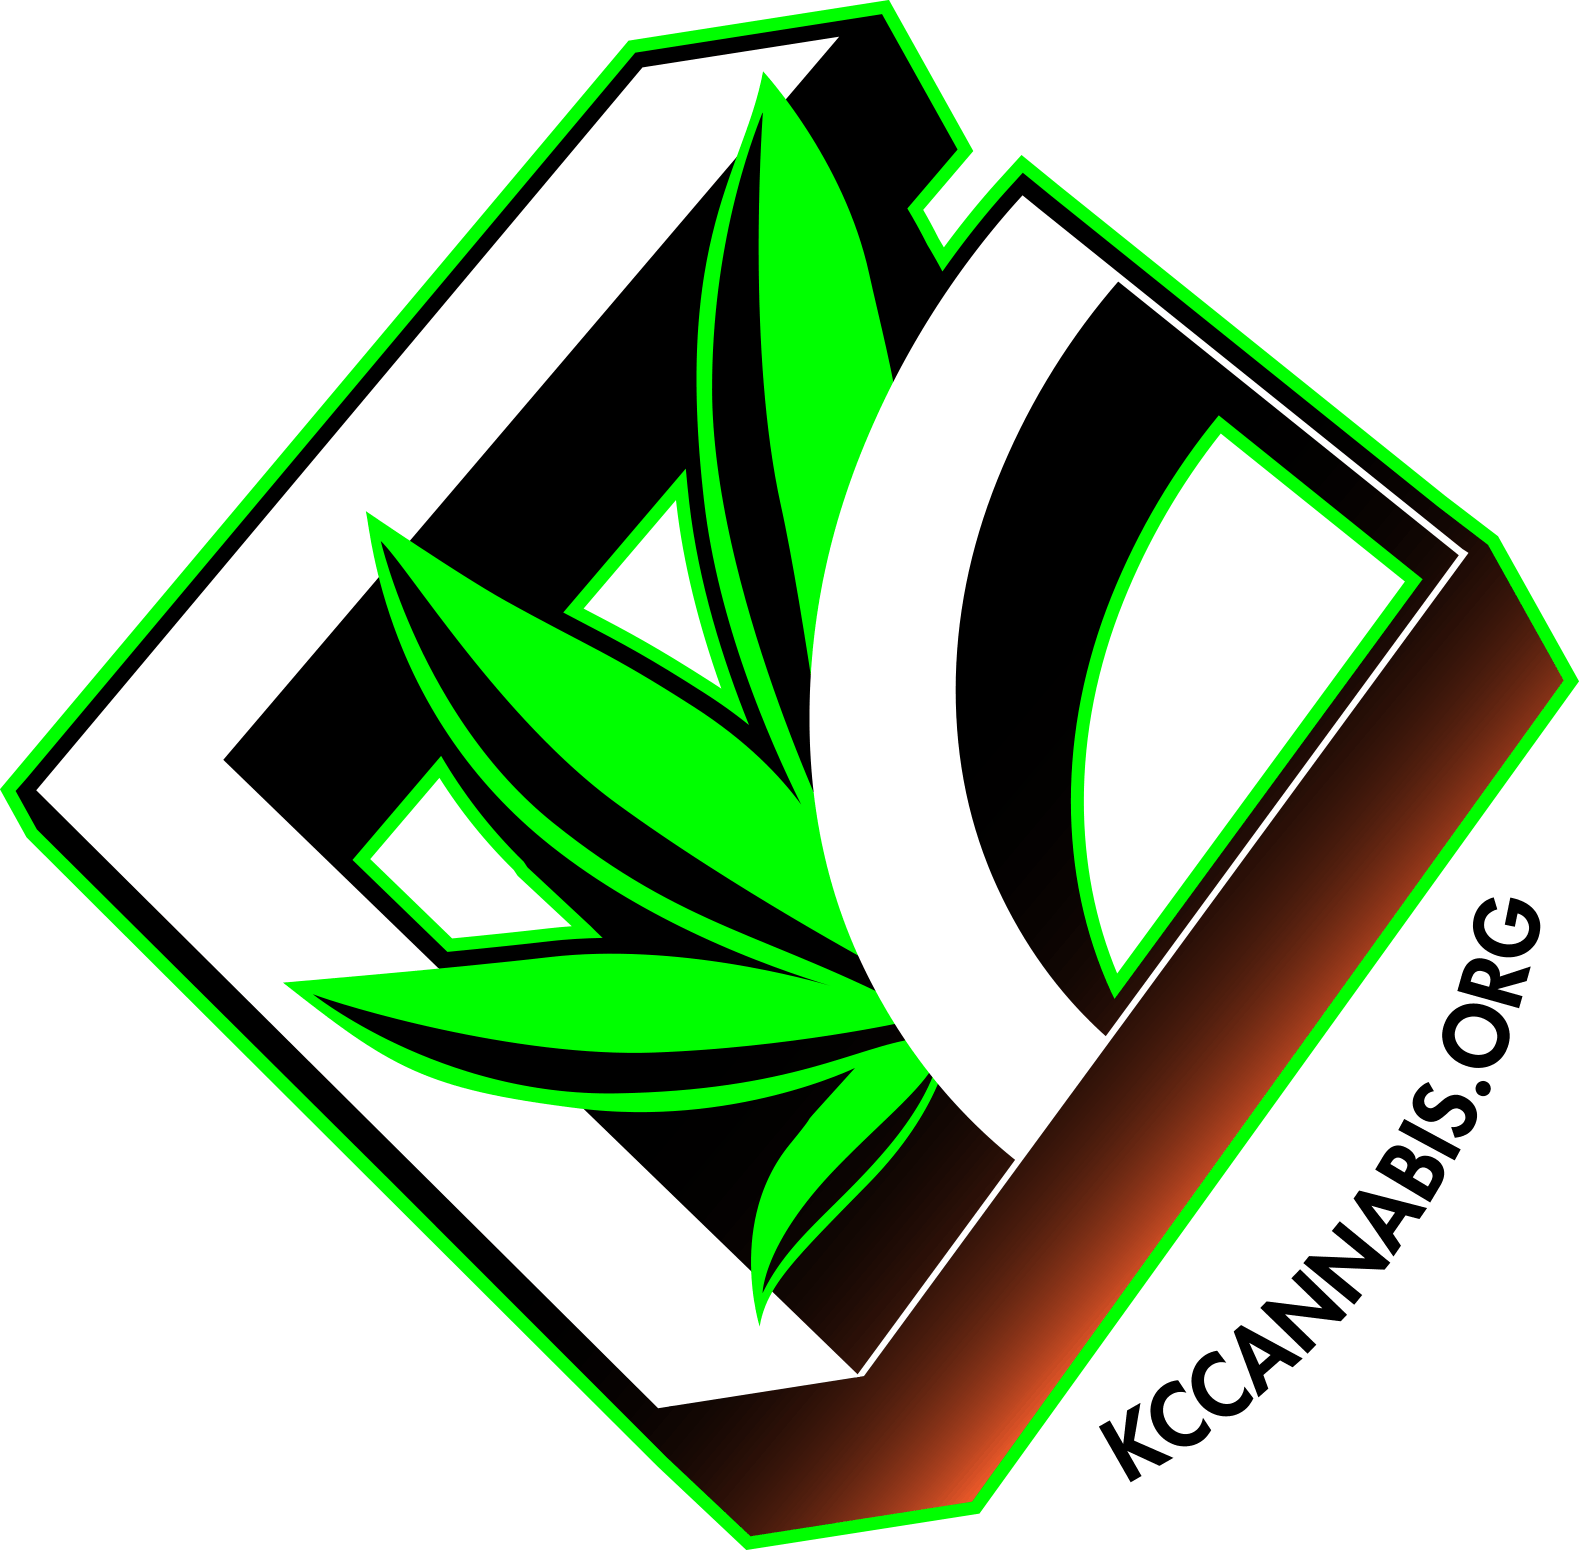 Kansas City Cannabis Company-logo